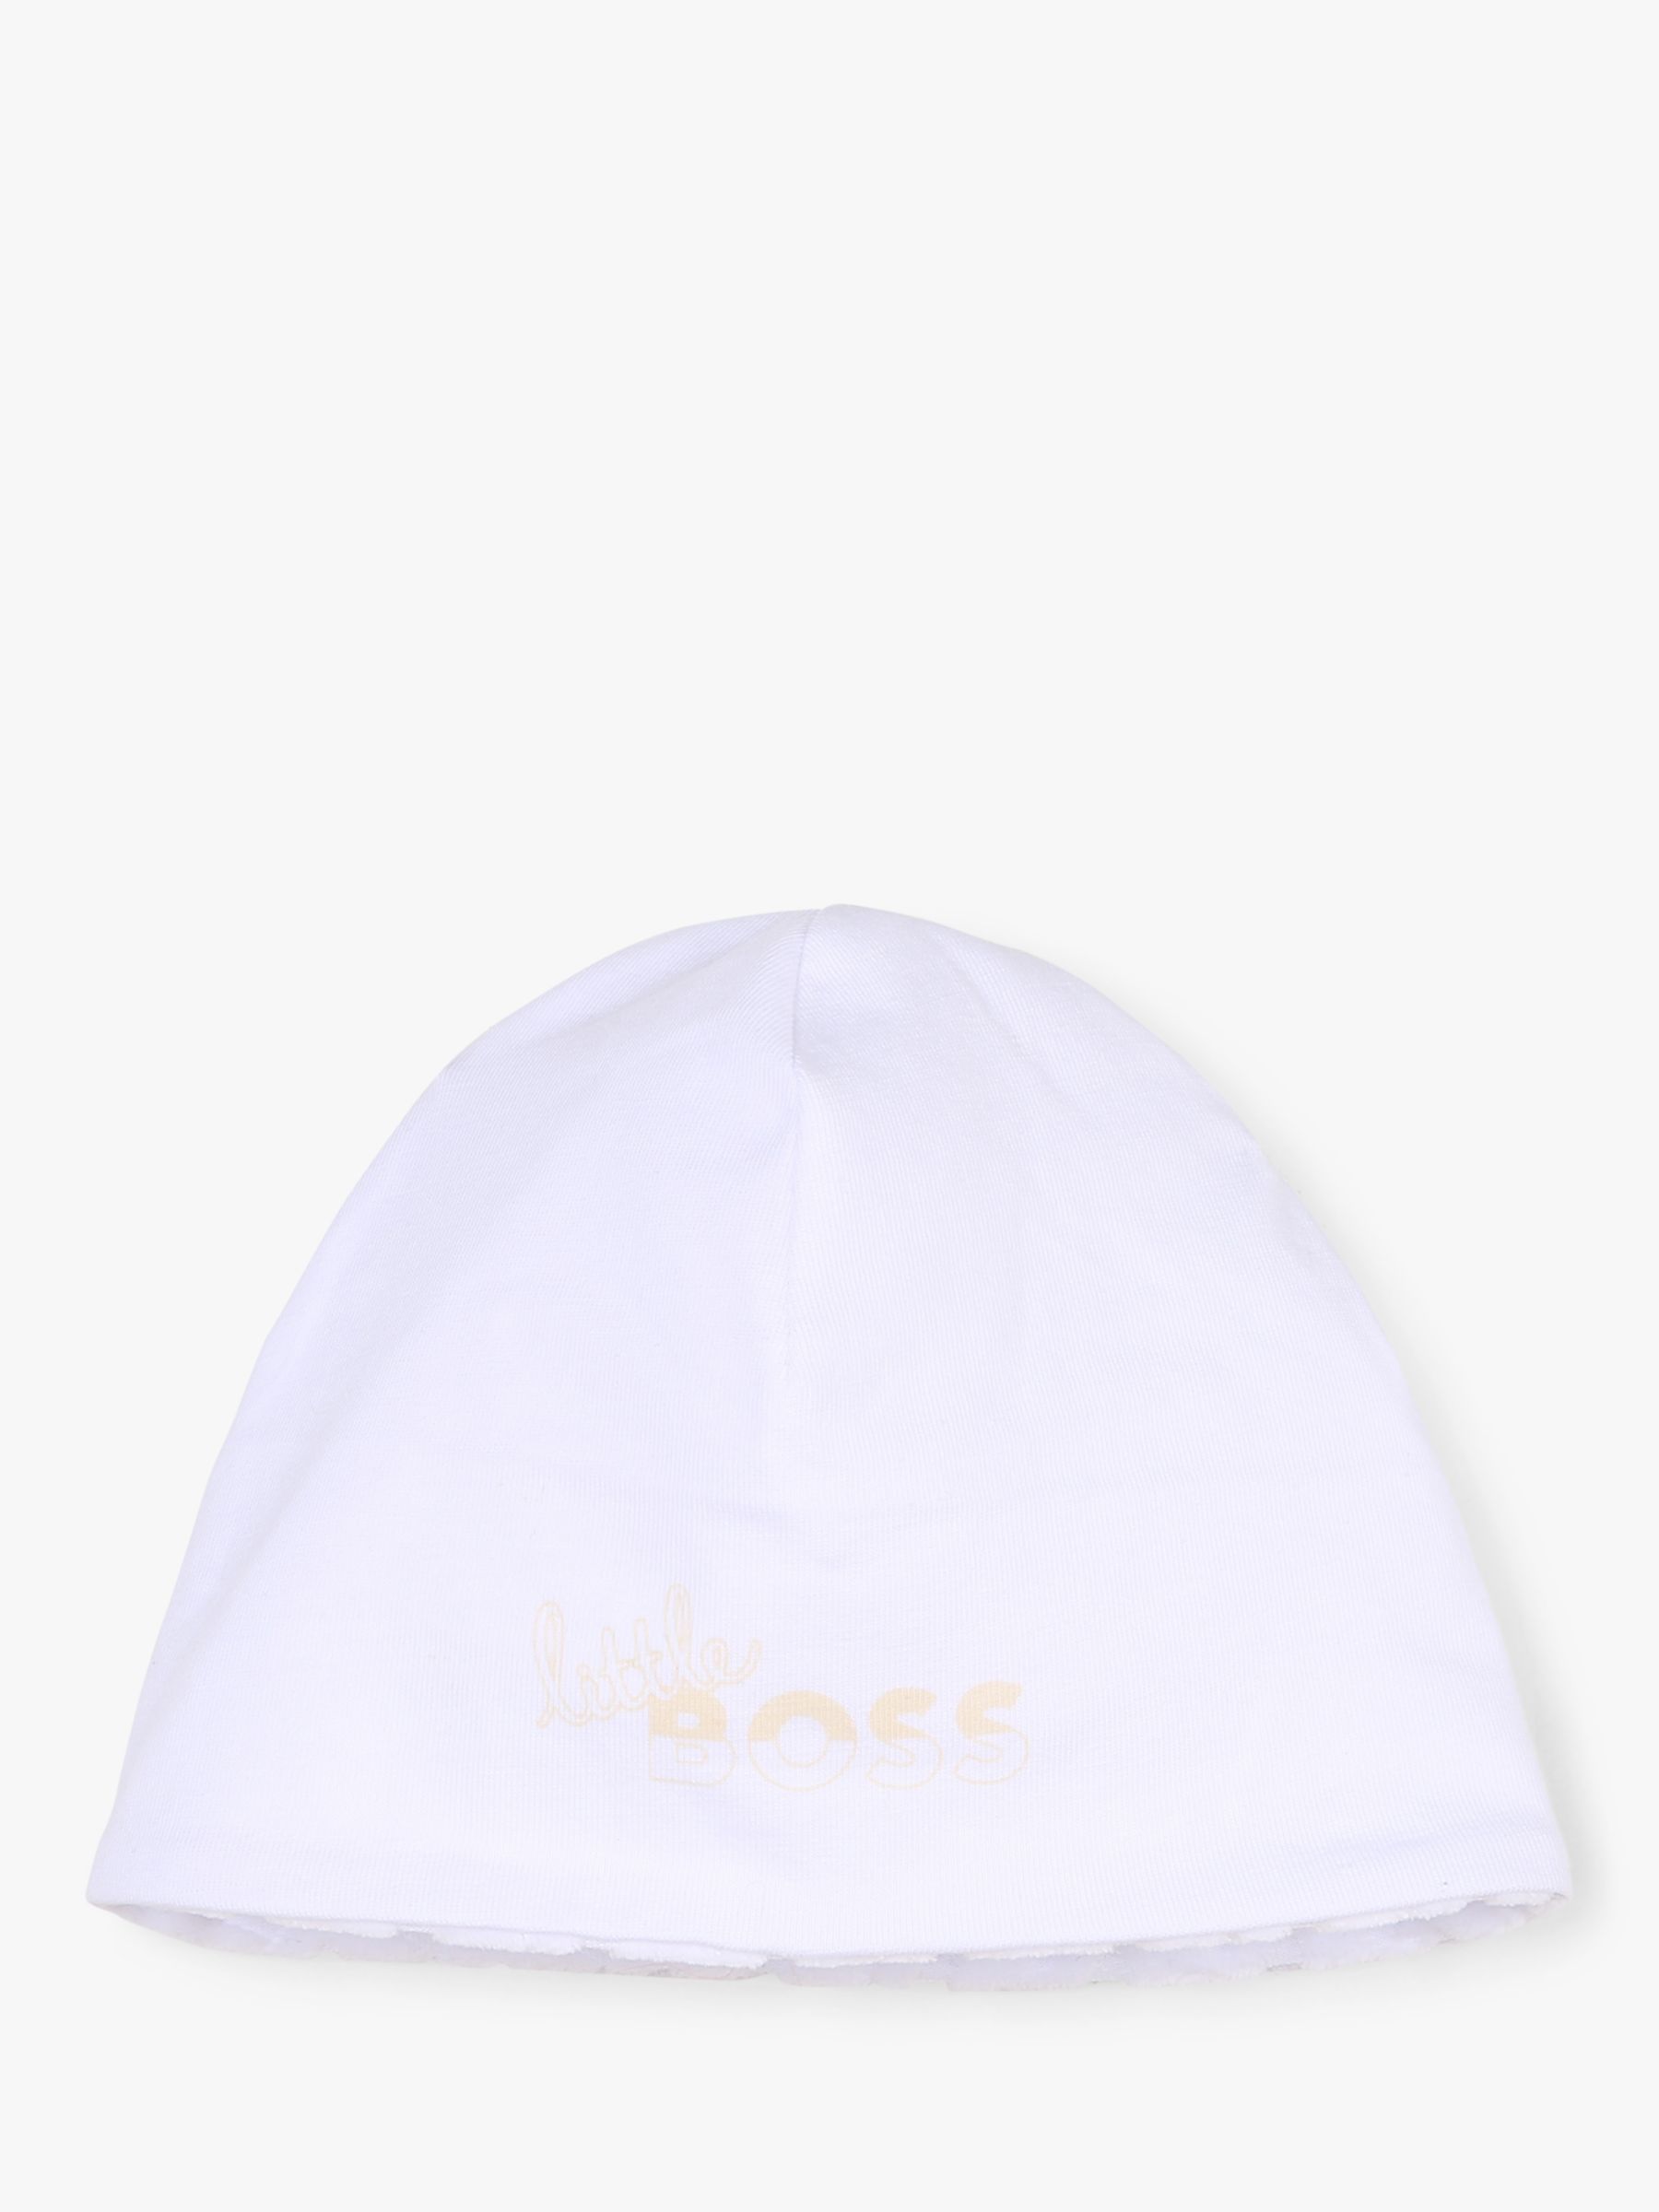 BOSS Baby Velvet Monogram Jacquard Sleepsuit, Bodysuit, Hat & Mitten Set, White, 6 months